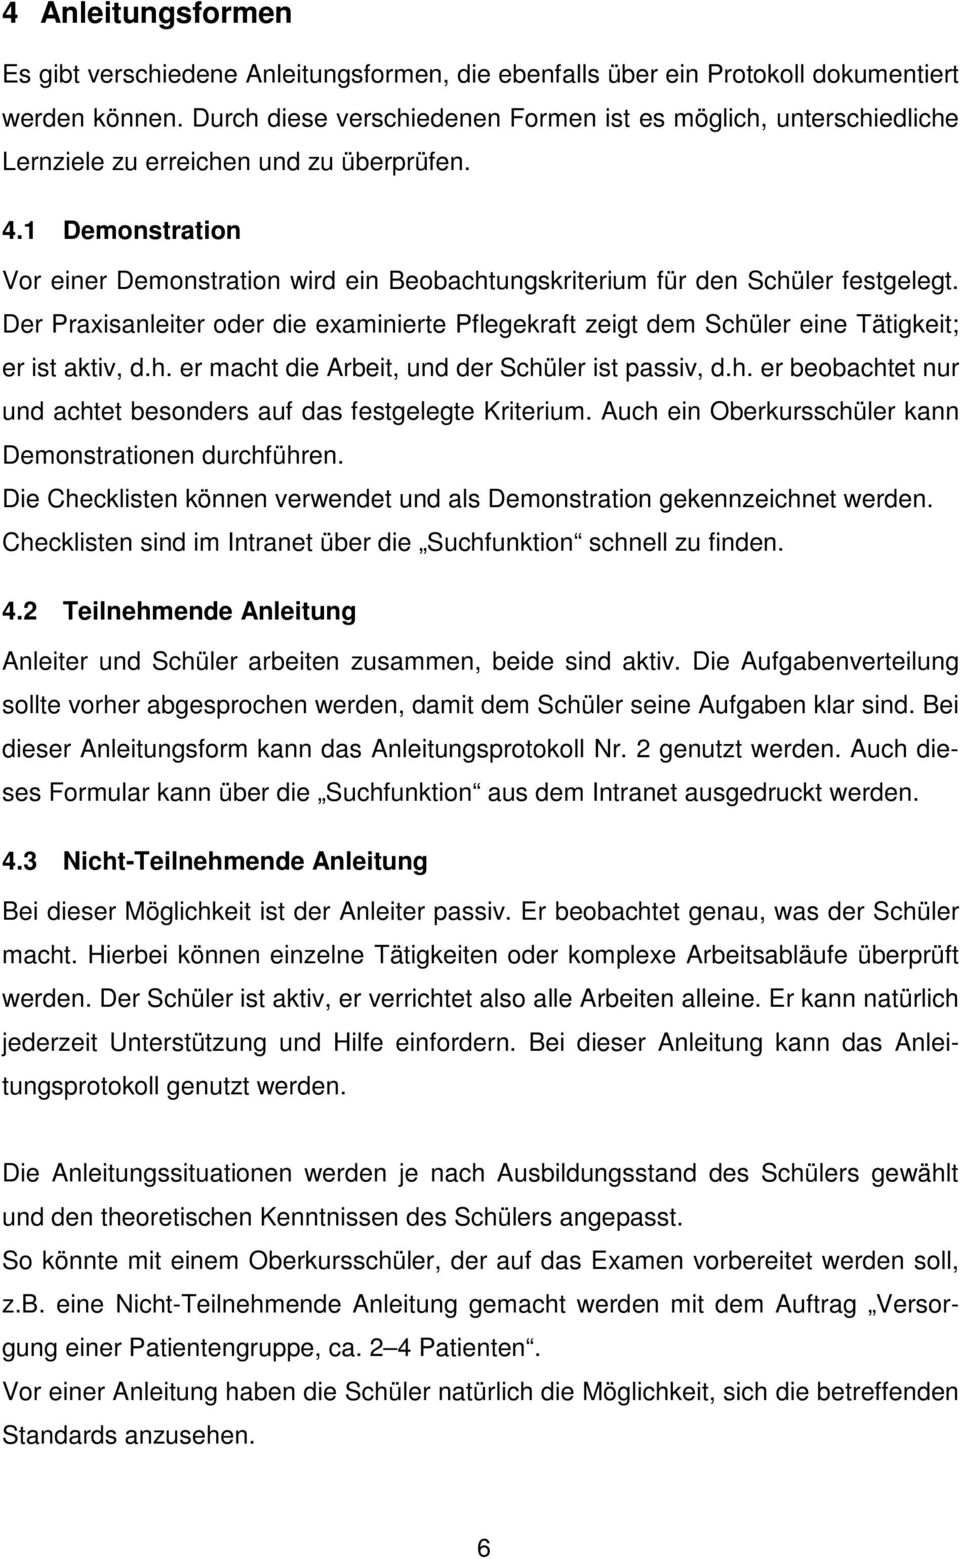 Handbuch Zur Praxisanleitung Pdf Free Download